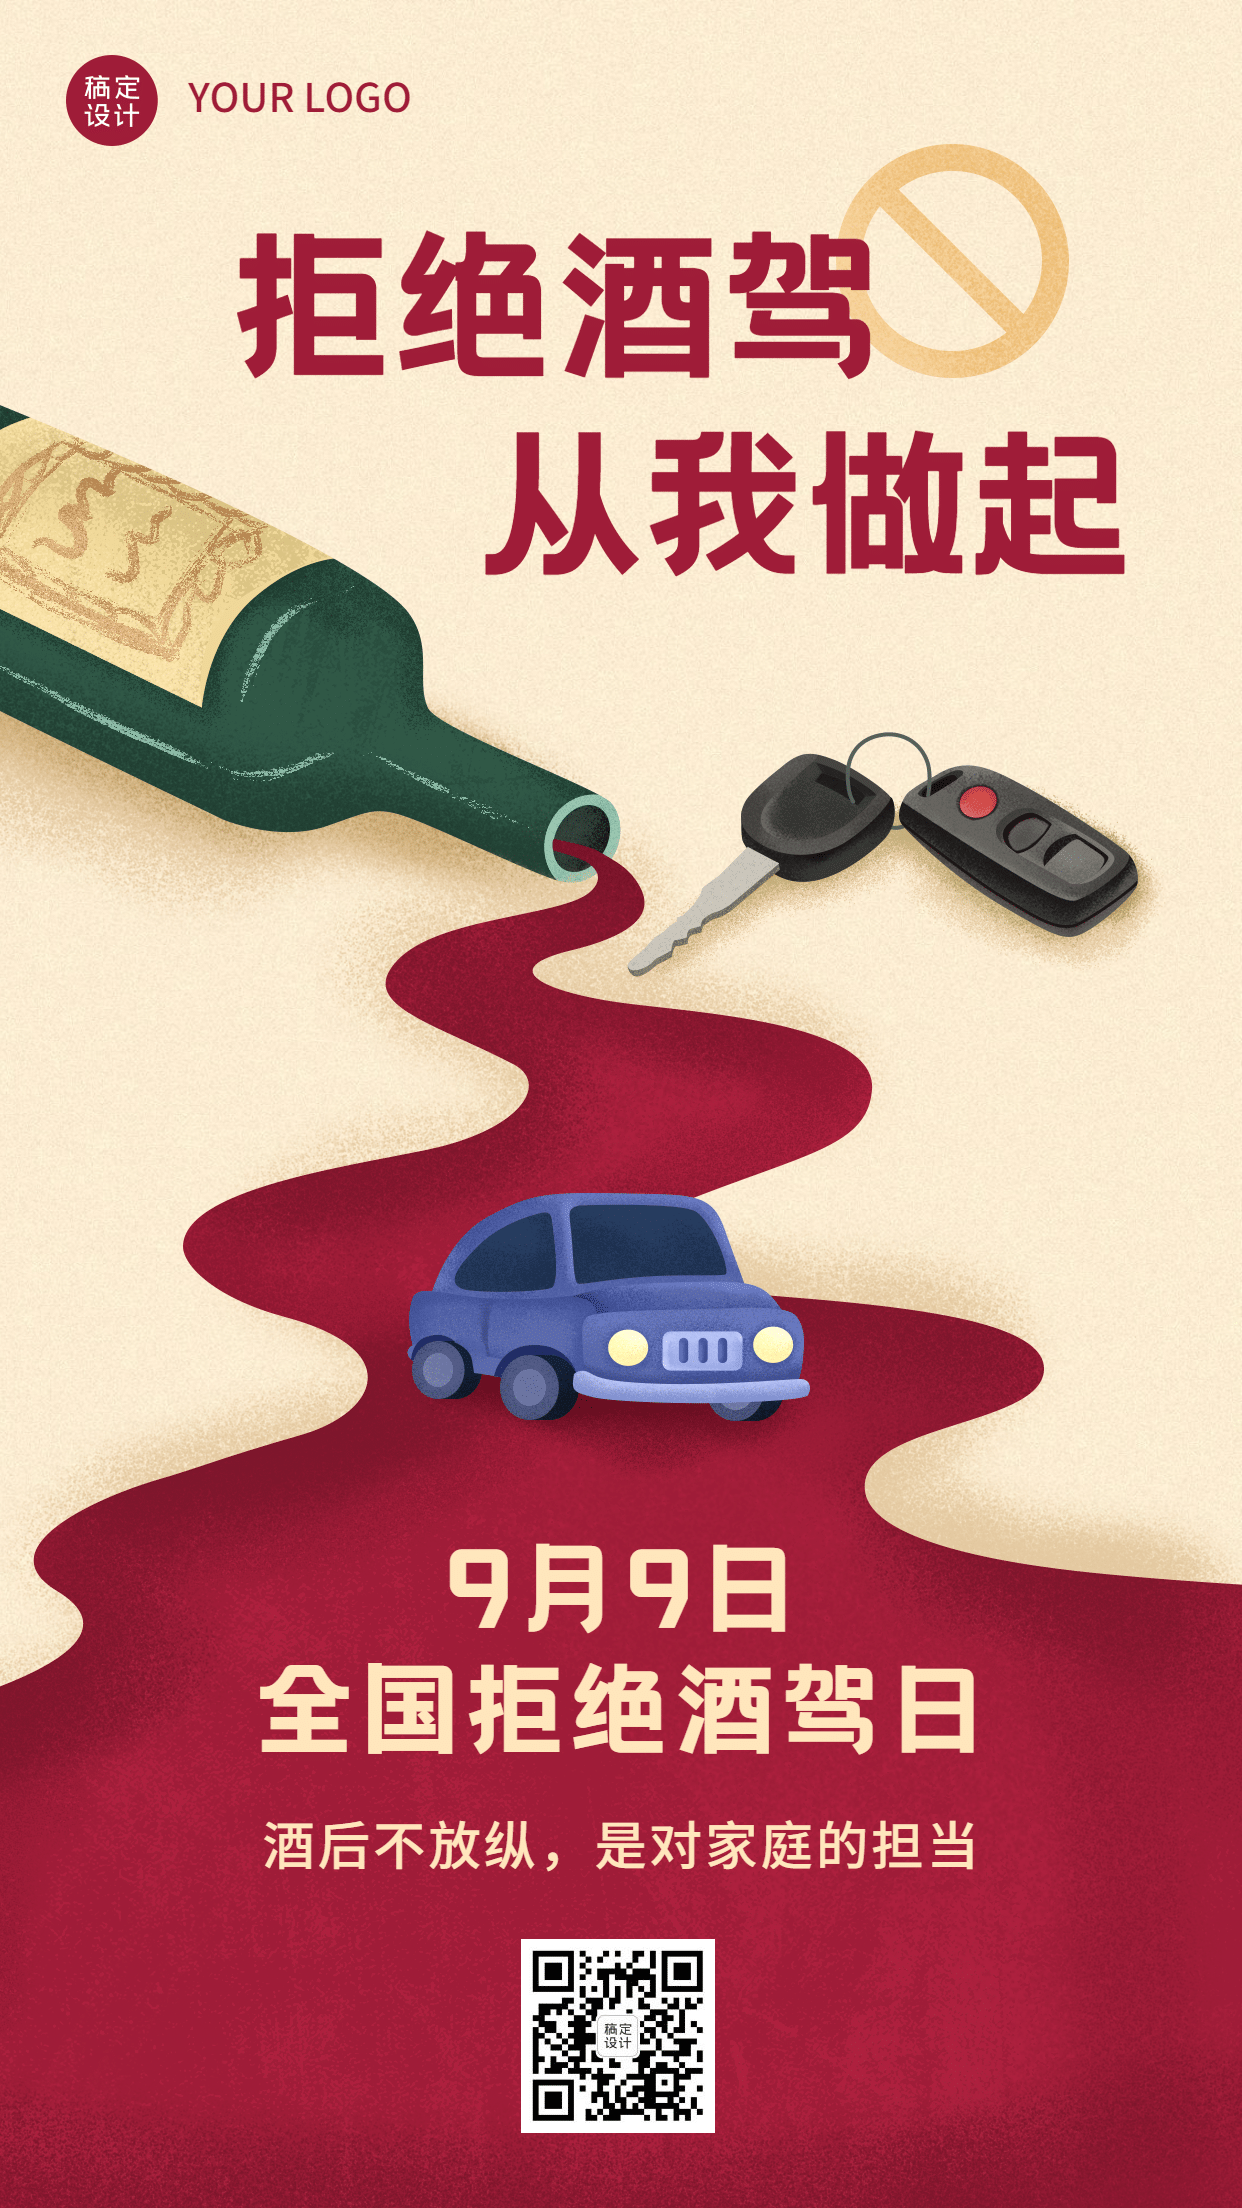 全国拒绝酒驾日交通安全公益宣传手绘手机海报预览效果